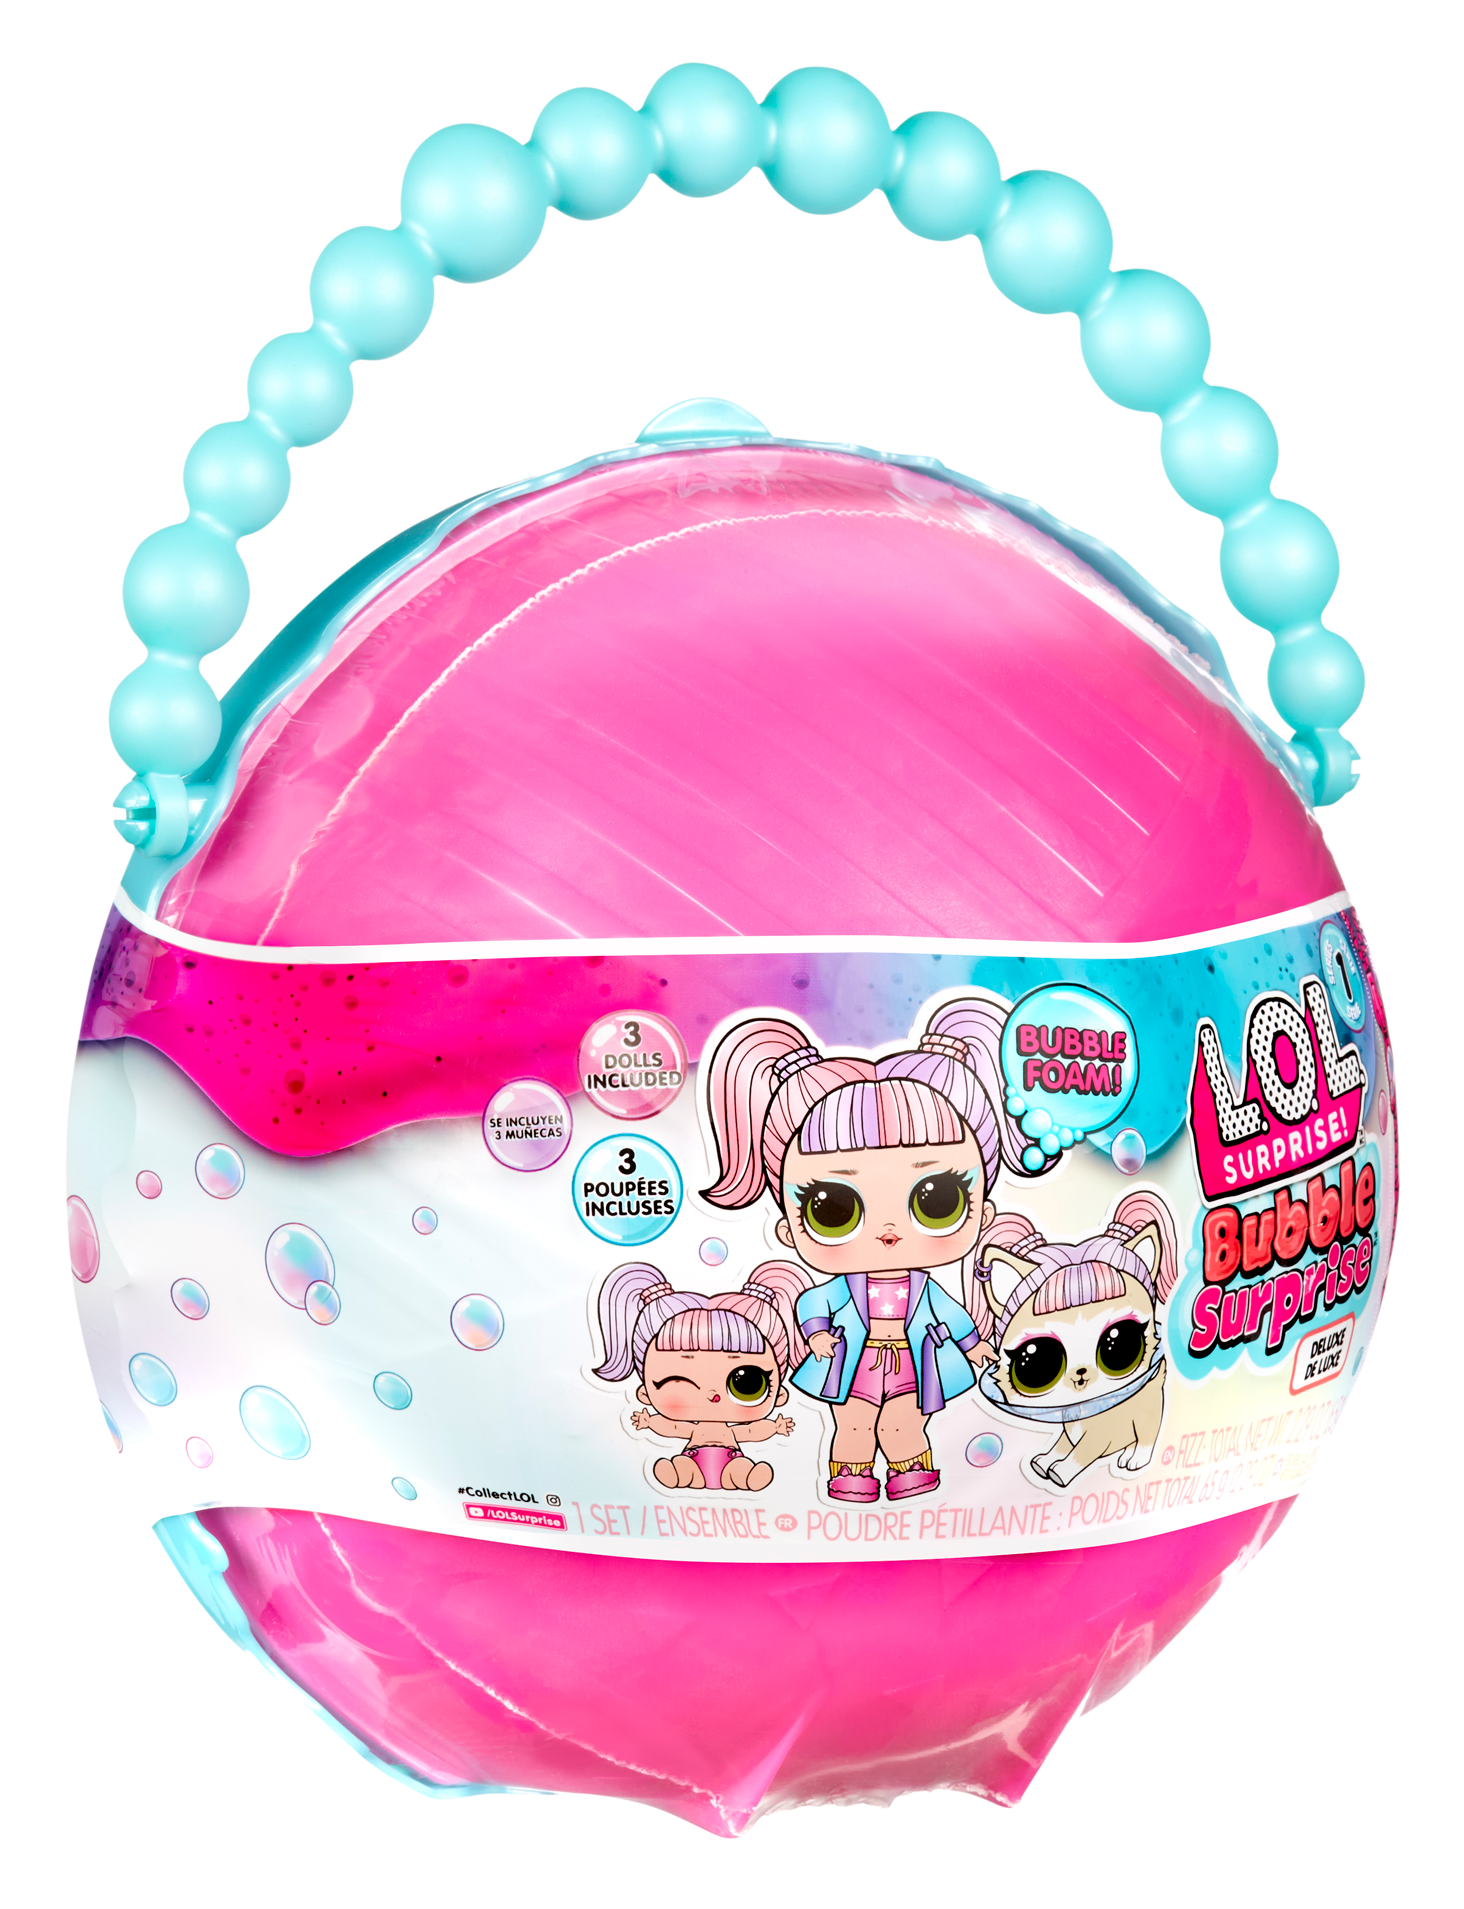 Lol surprise bubble surprise deluxe - bambole collezionabili, pet, little sister, sorprese, accessori - bubble surprise, schiuma con cambio di colore - LOL